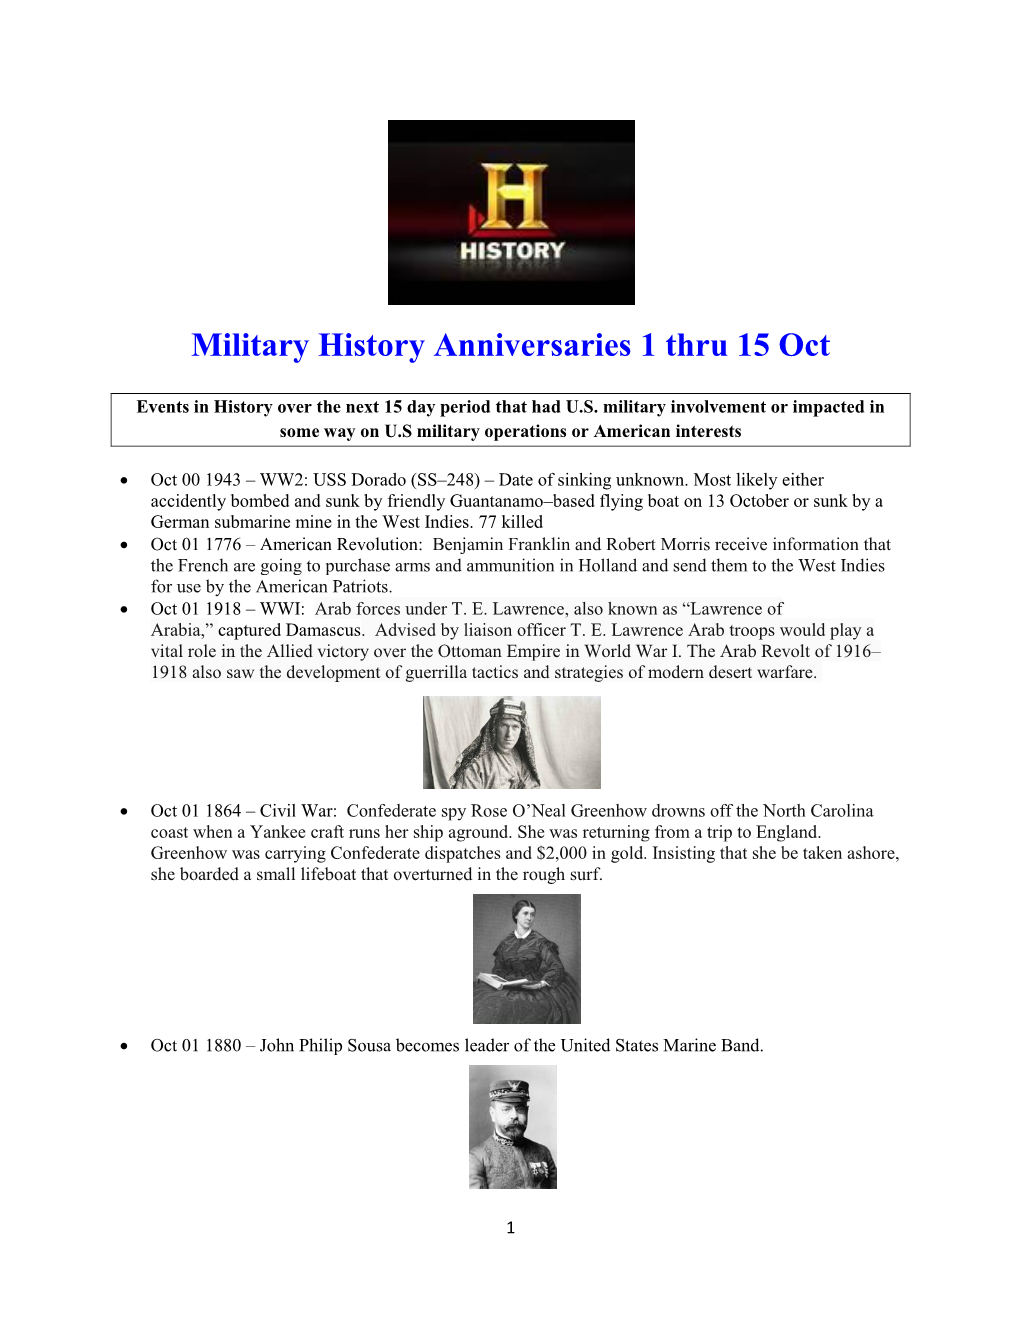 Military History Anniversaries 1001 Thru 101516